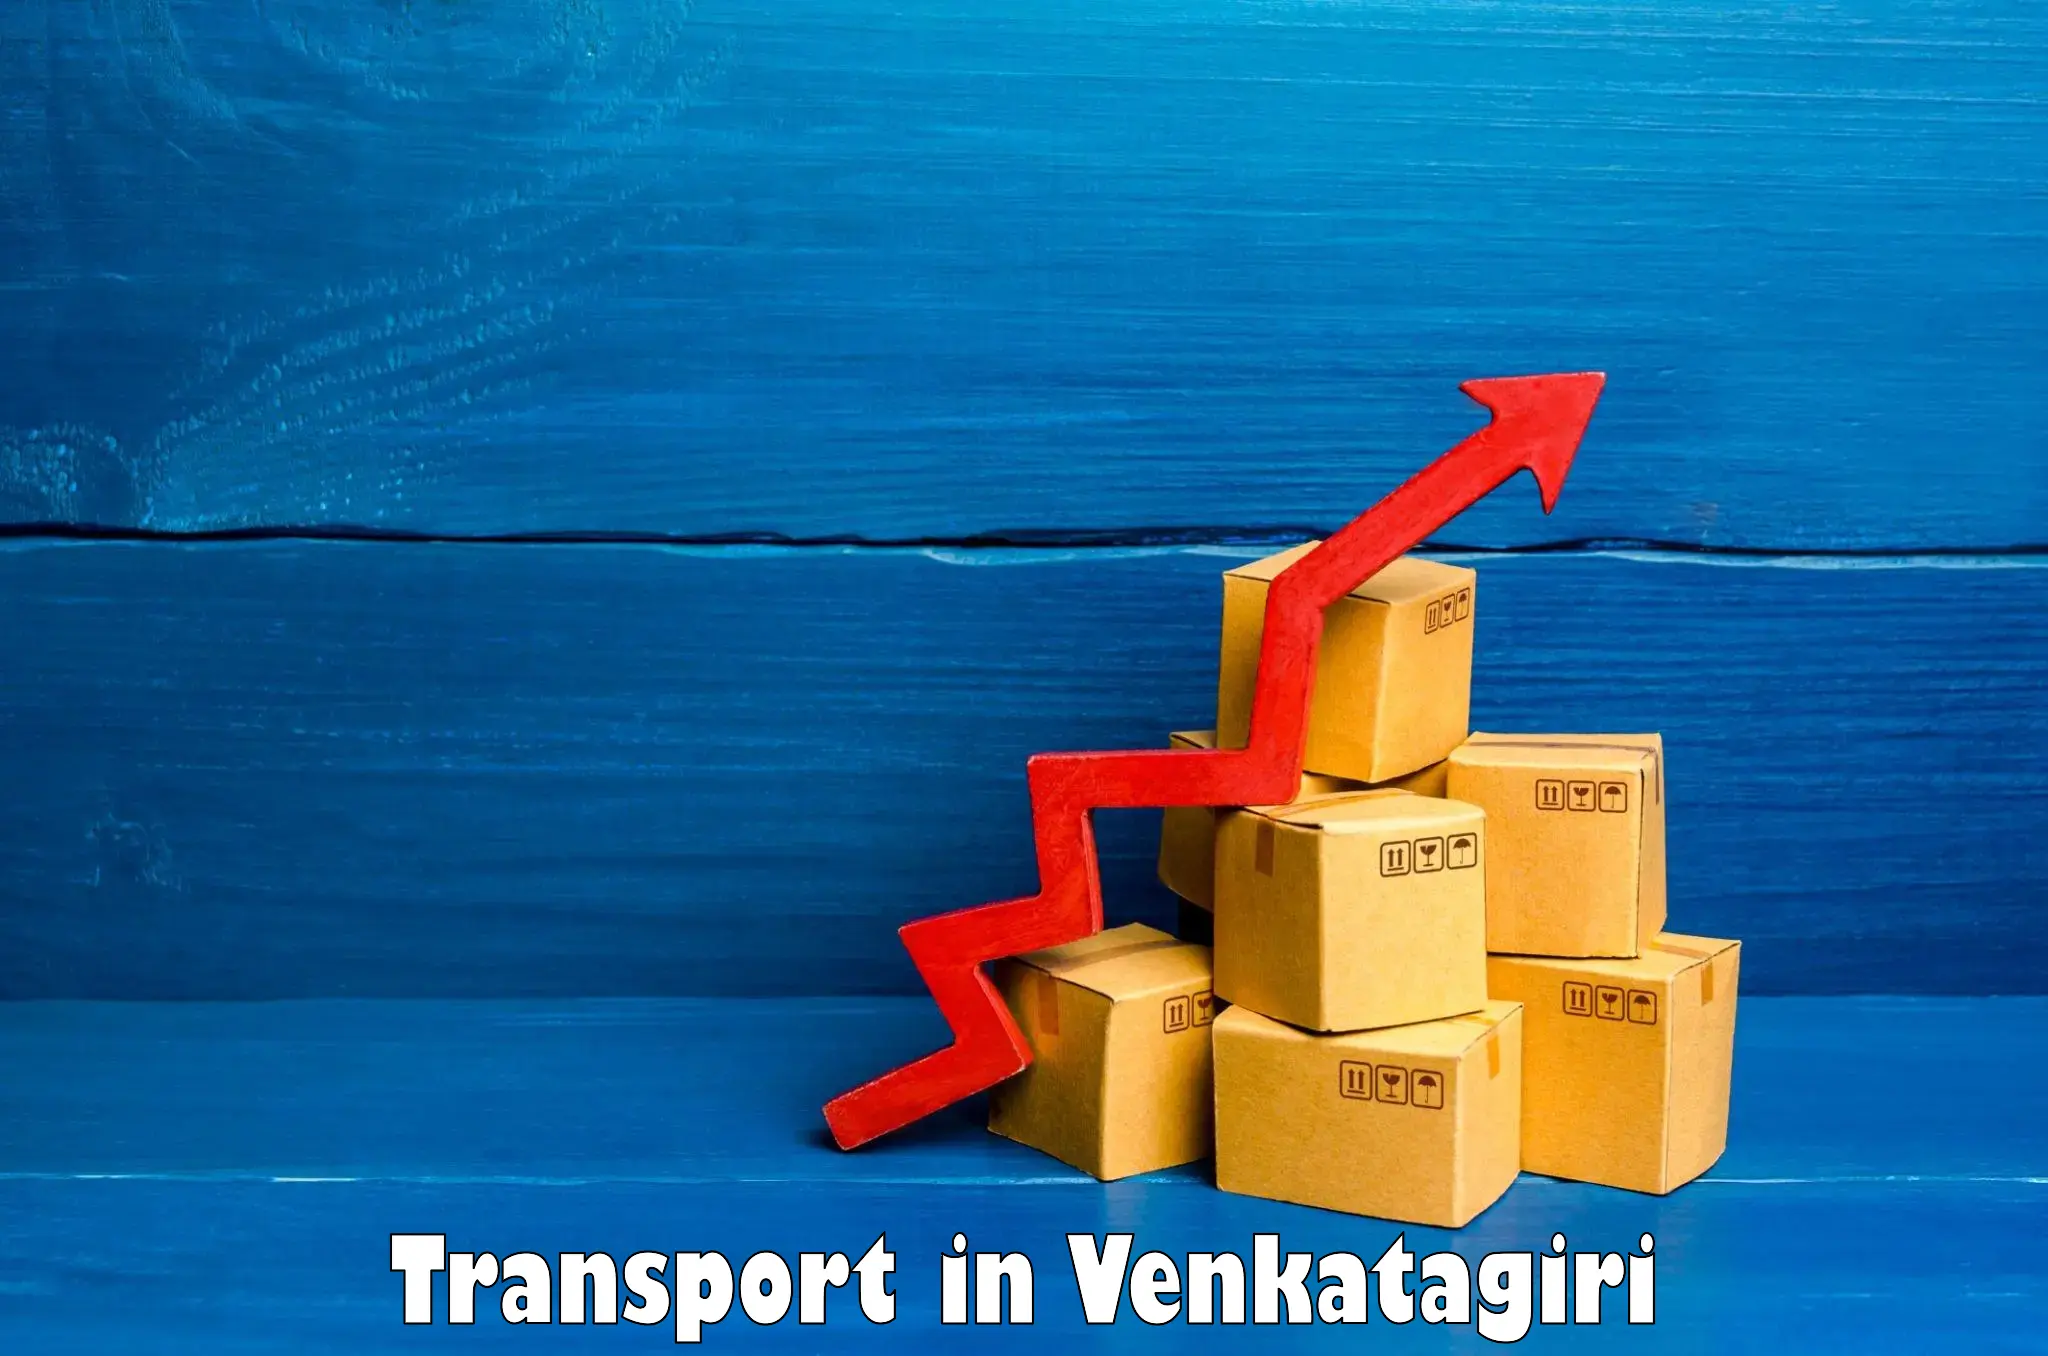 Parcel transport services in Venkatagiri